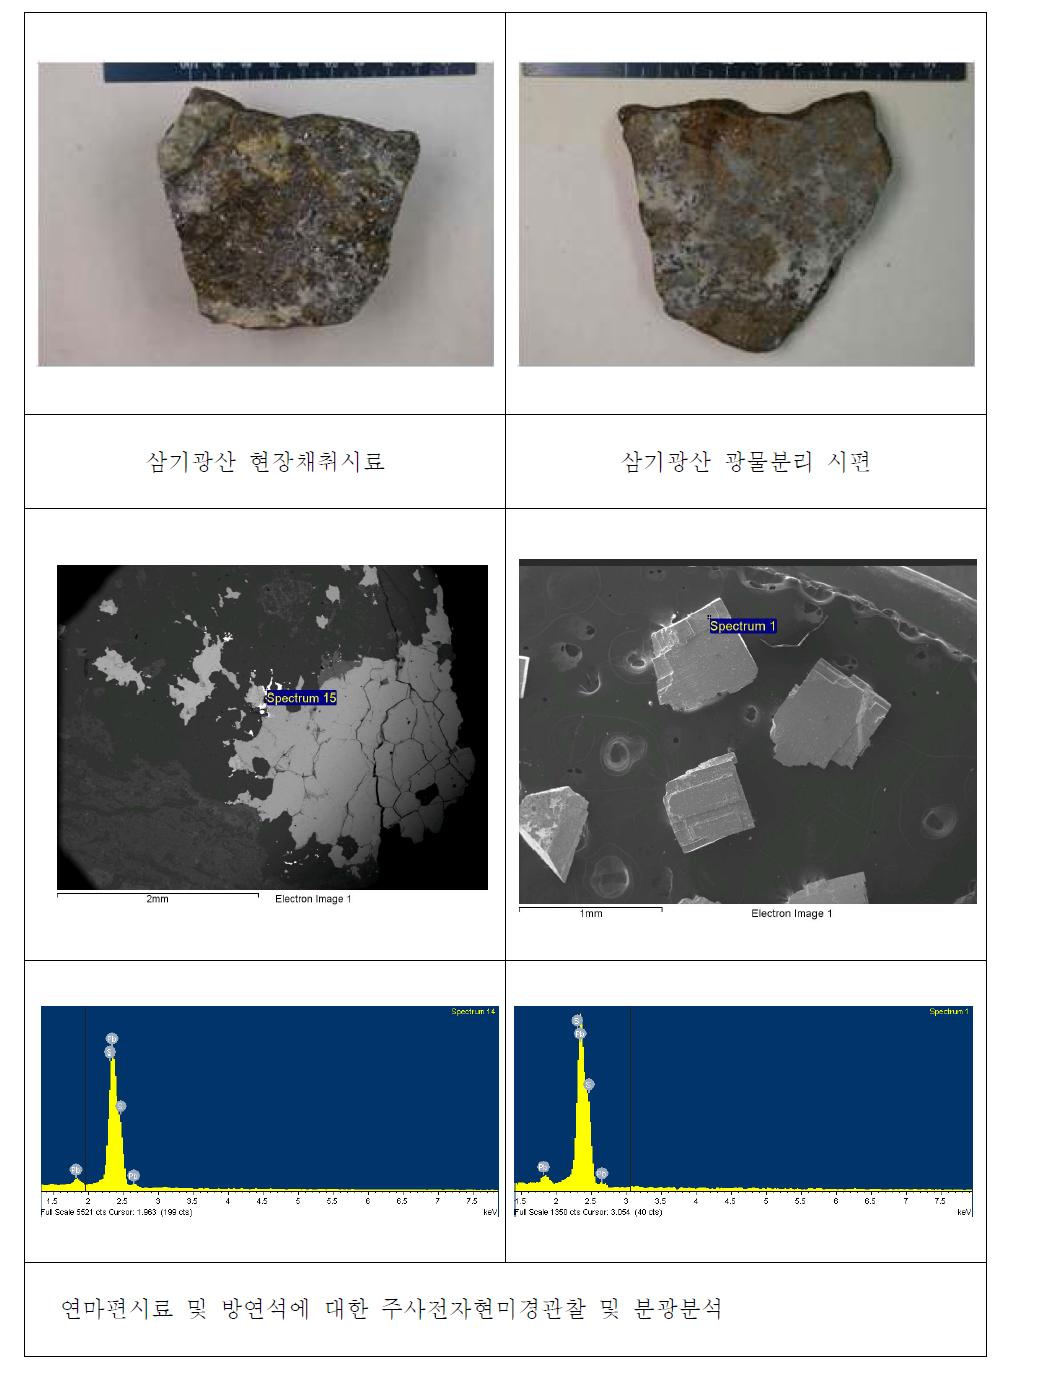 삼기광산 연마편 시료와 방연석의 전자현미경관찰 및 분광분석